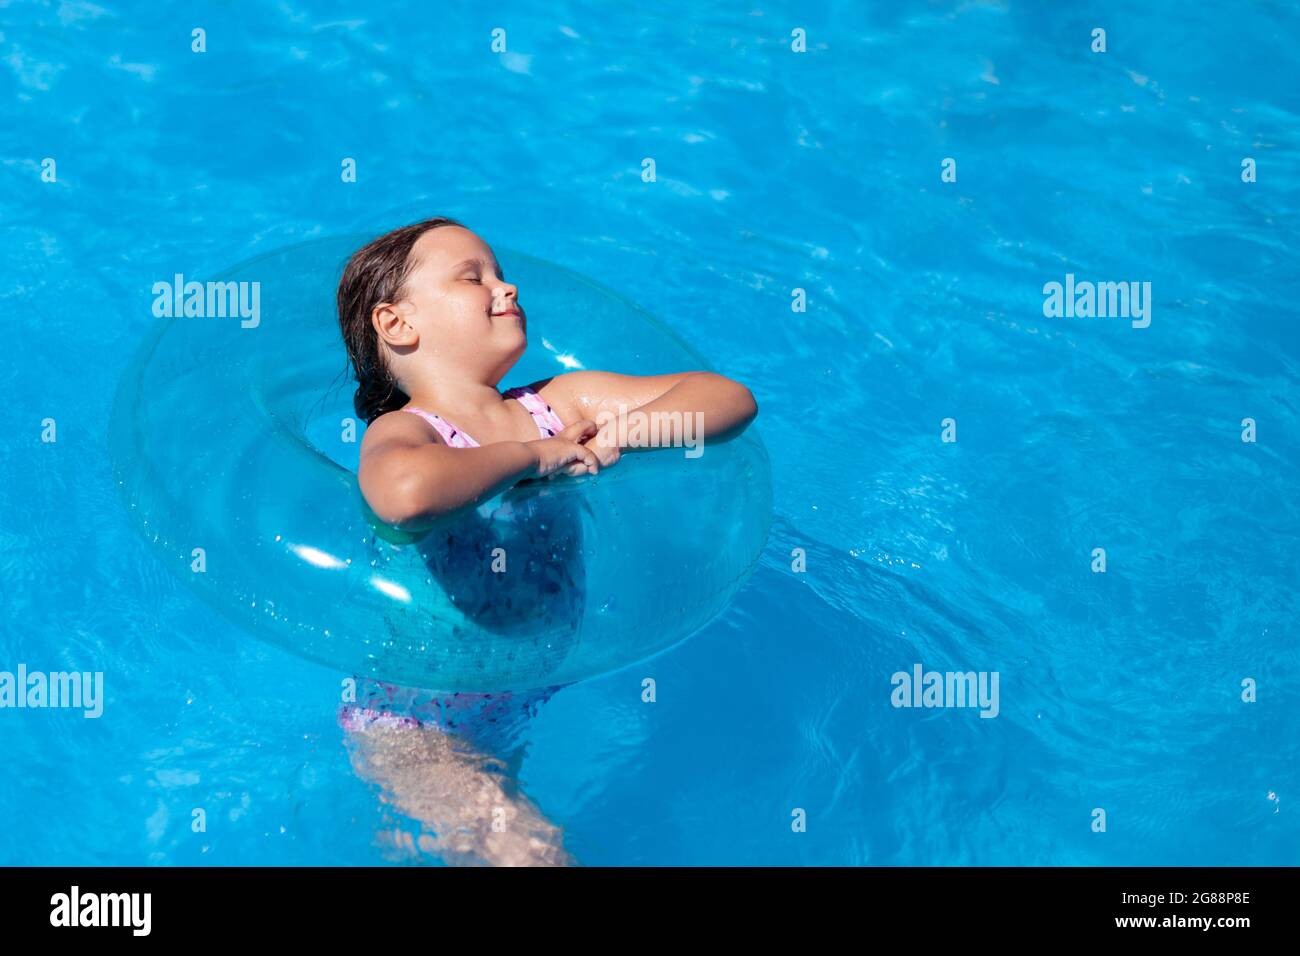 Minimalistischer Trend, blauer aufblasbarer Schwimmkreis auf dem blauen Wasser des Pools, ein glückliches Mädchen, das an einem heißen Sommertag die Kühle des Wassers genießt Stockfoto